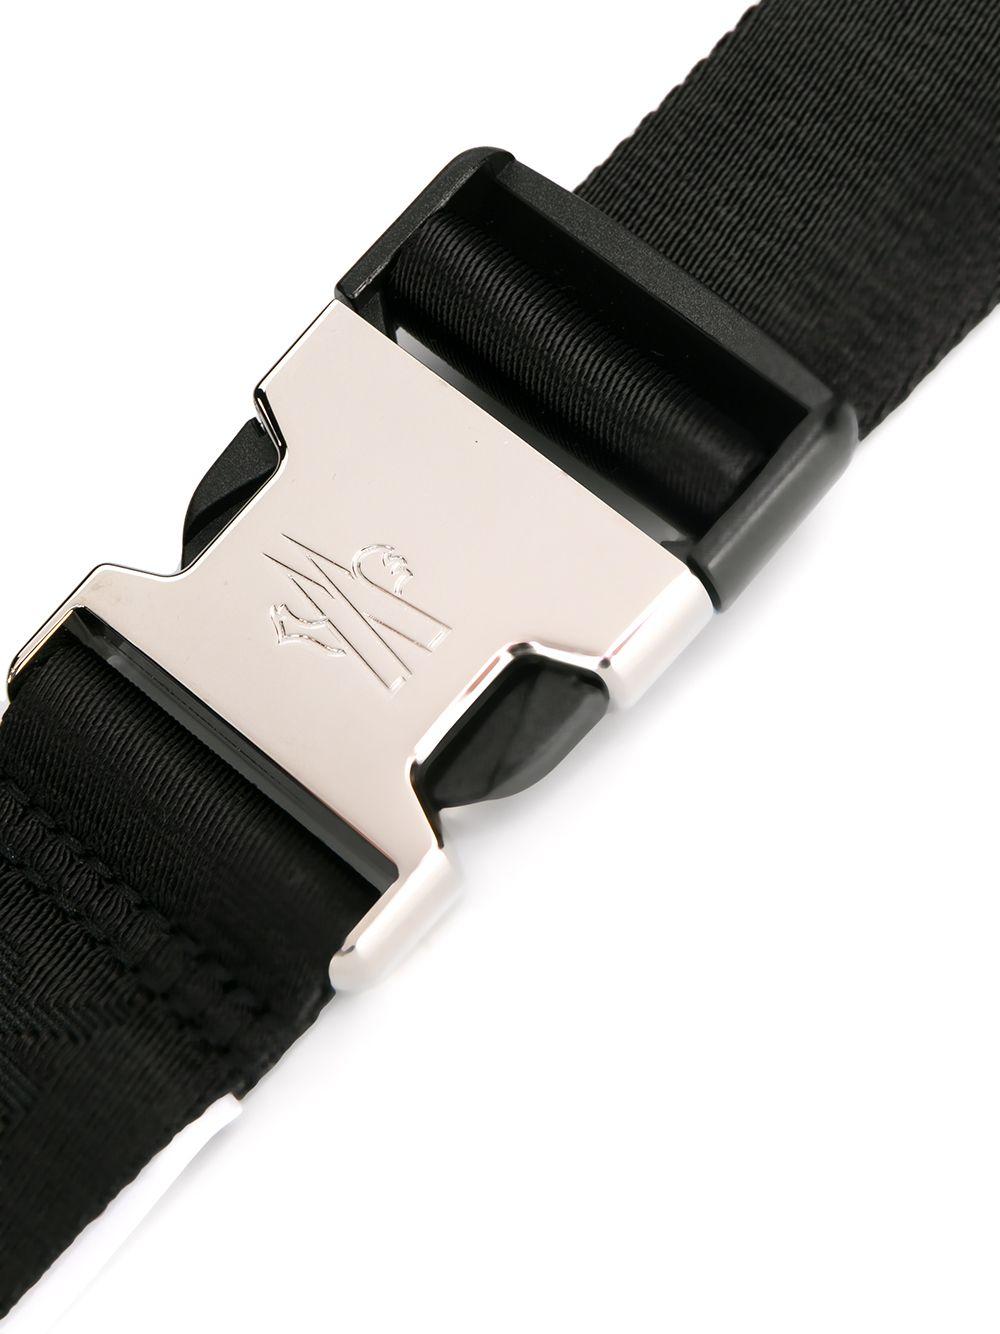 Moncler Logo Clip-buckle Belt in Black for Men | Lyst